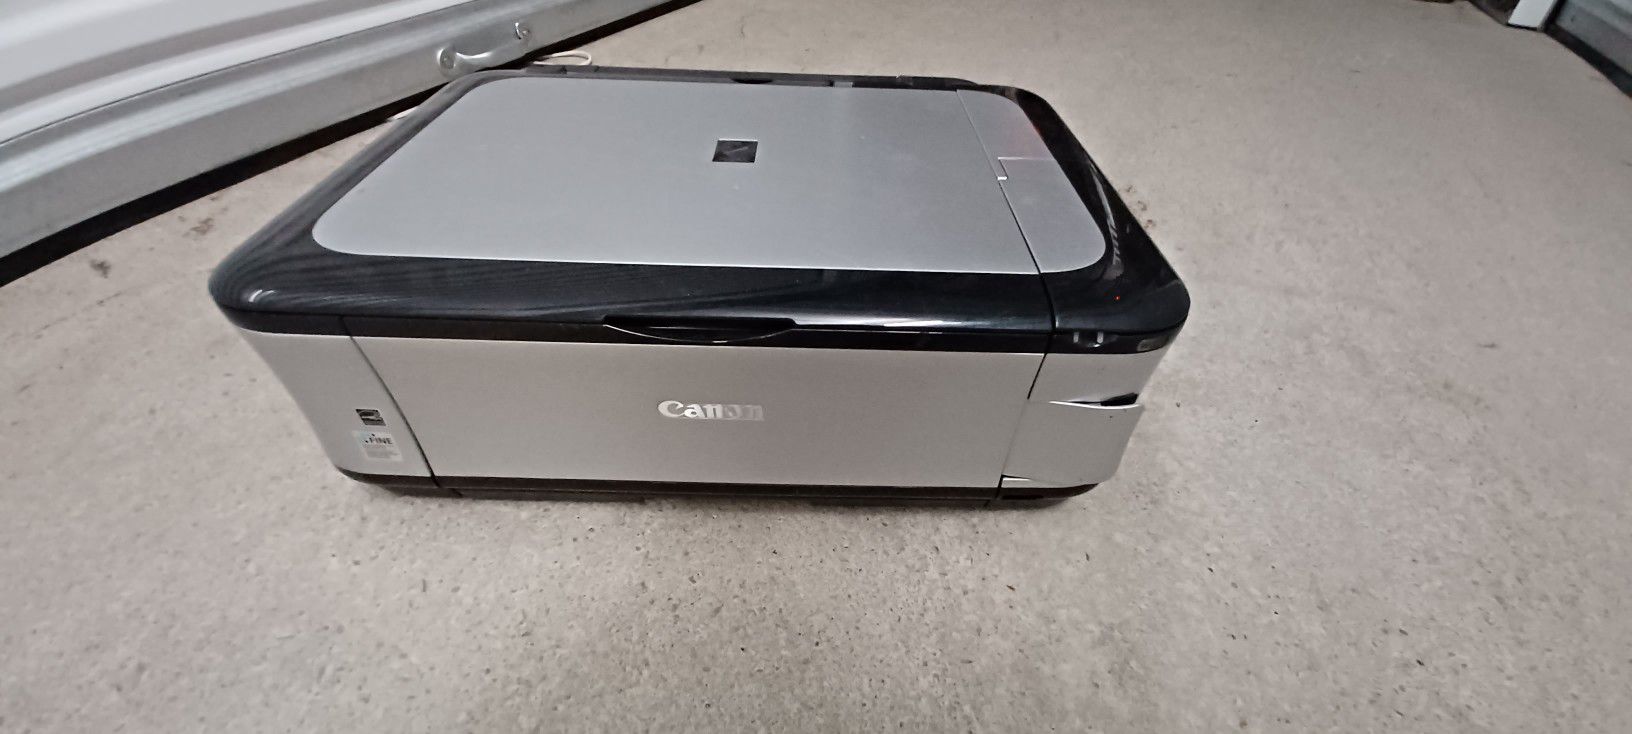 Cannon Pixma Printer 